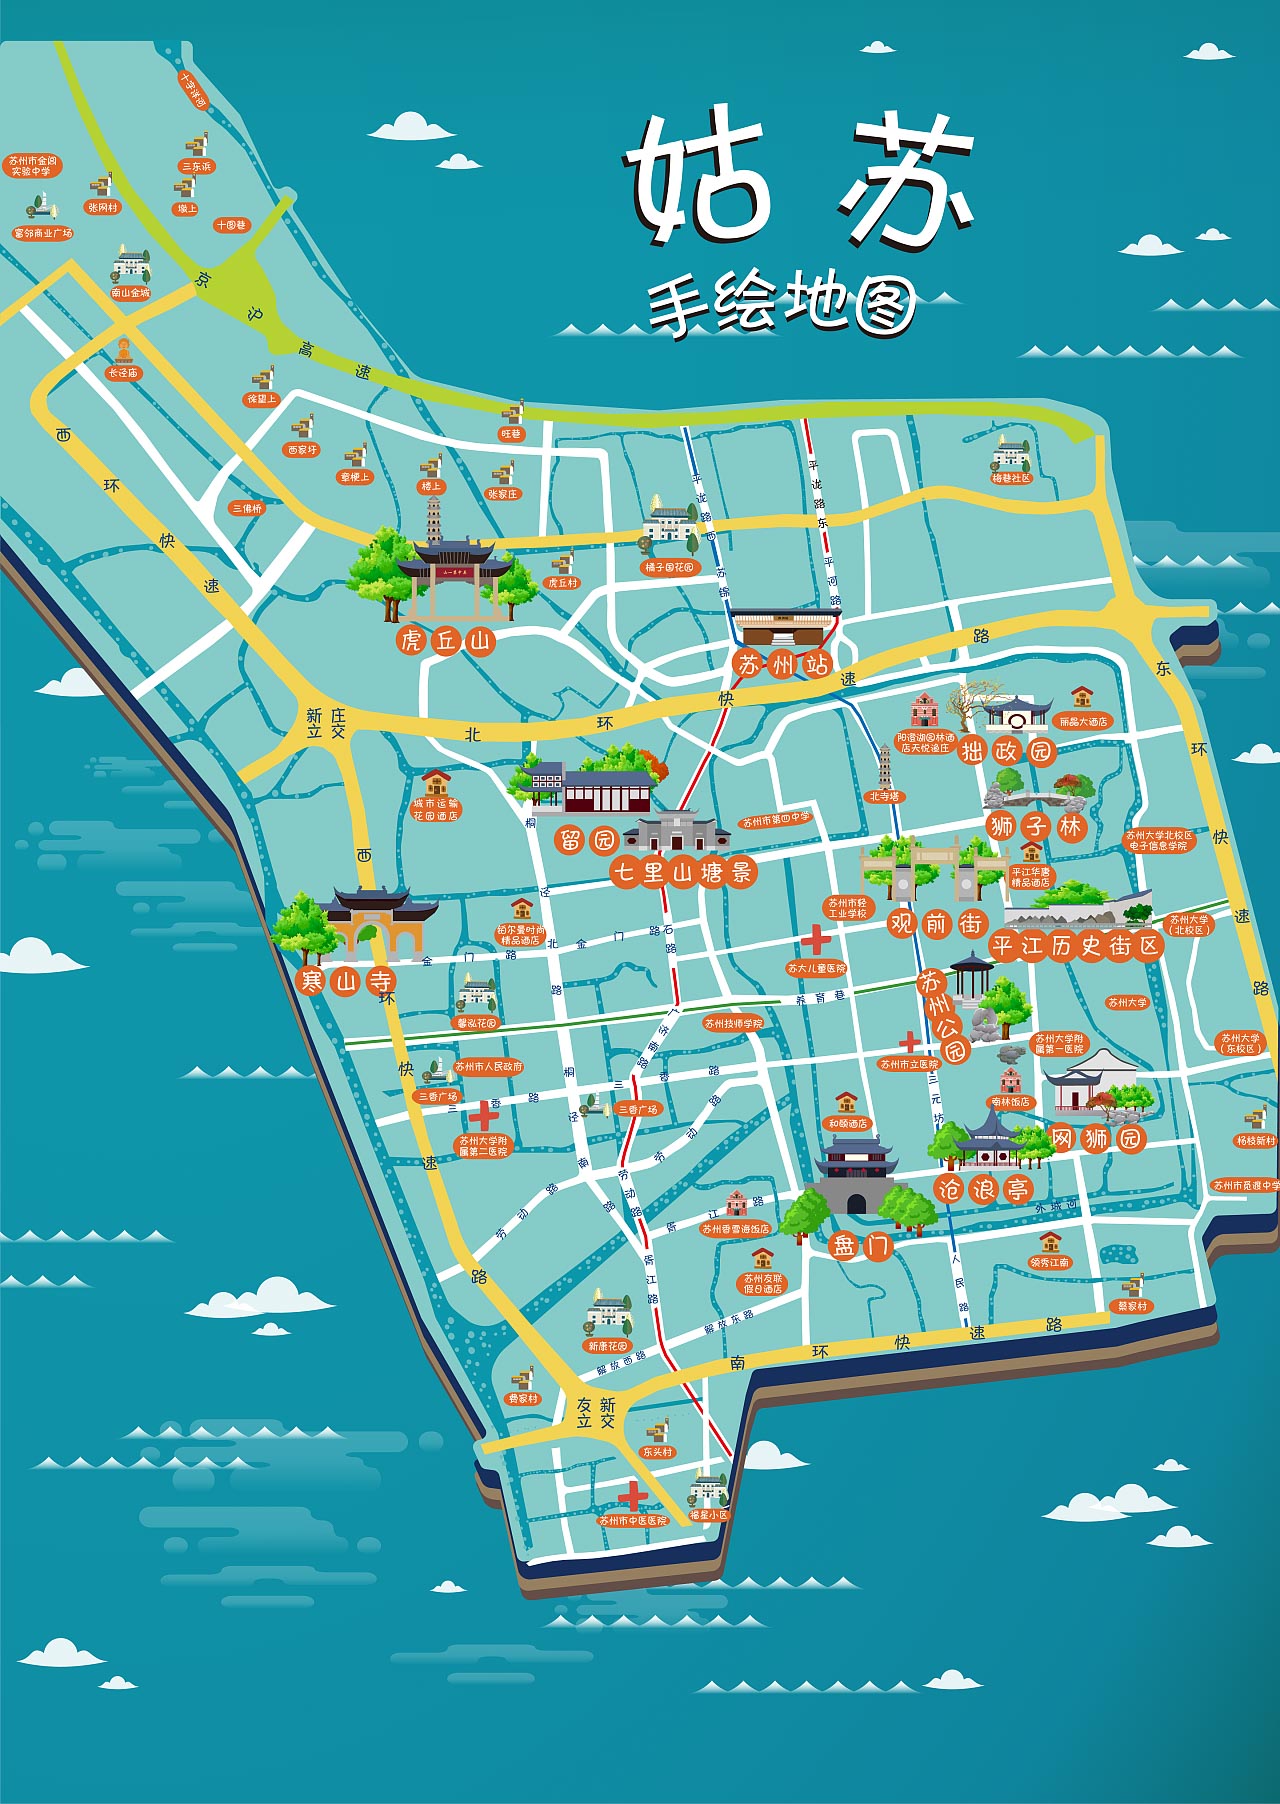 枫木镇手绘地图景区的文化宝藏